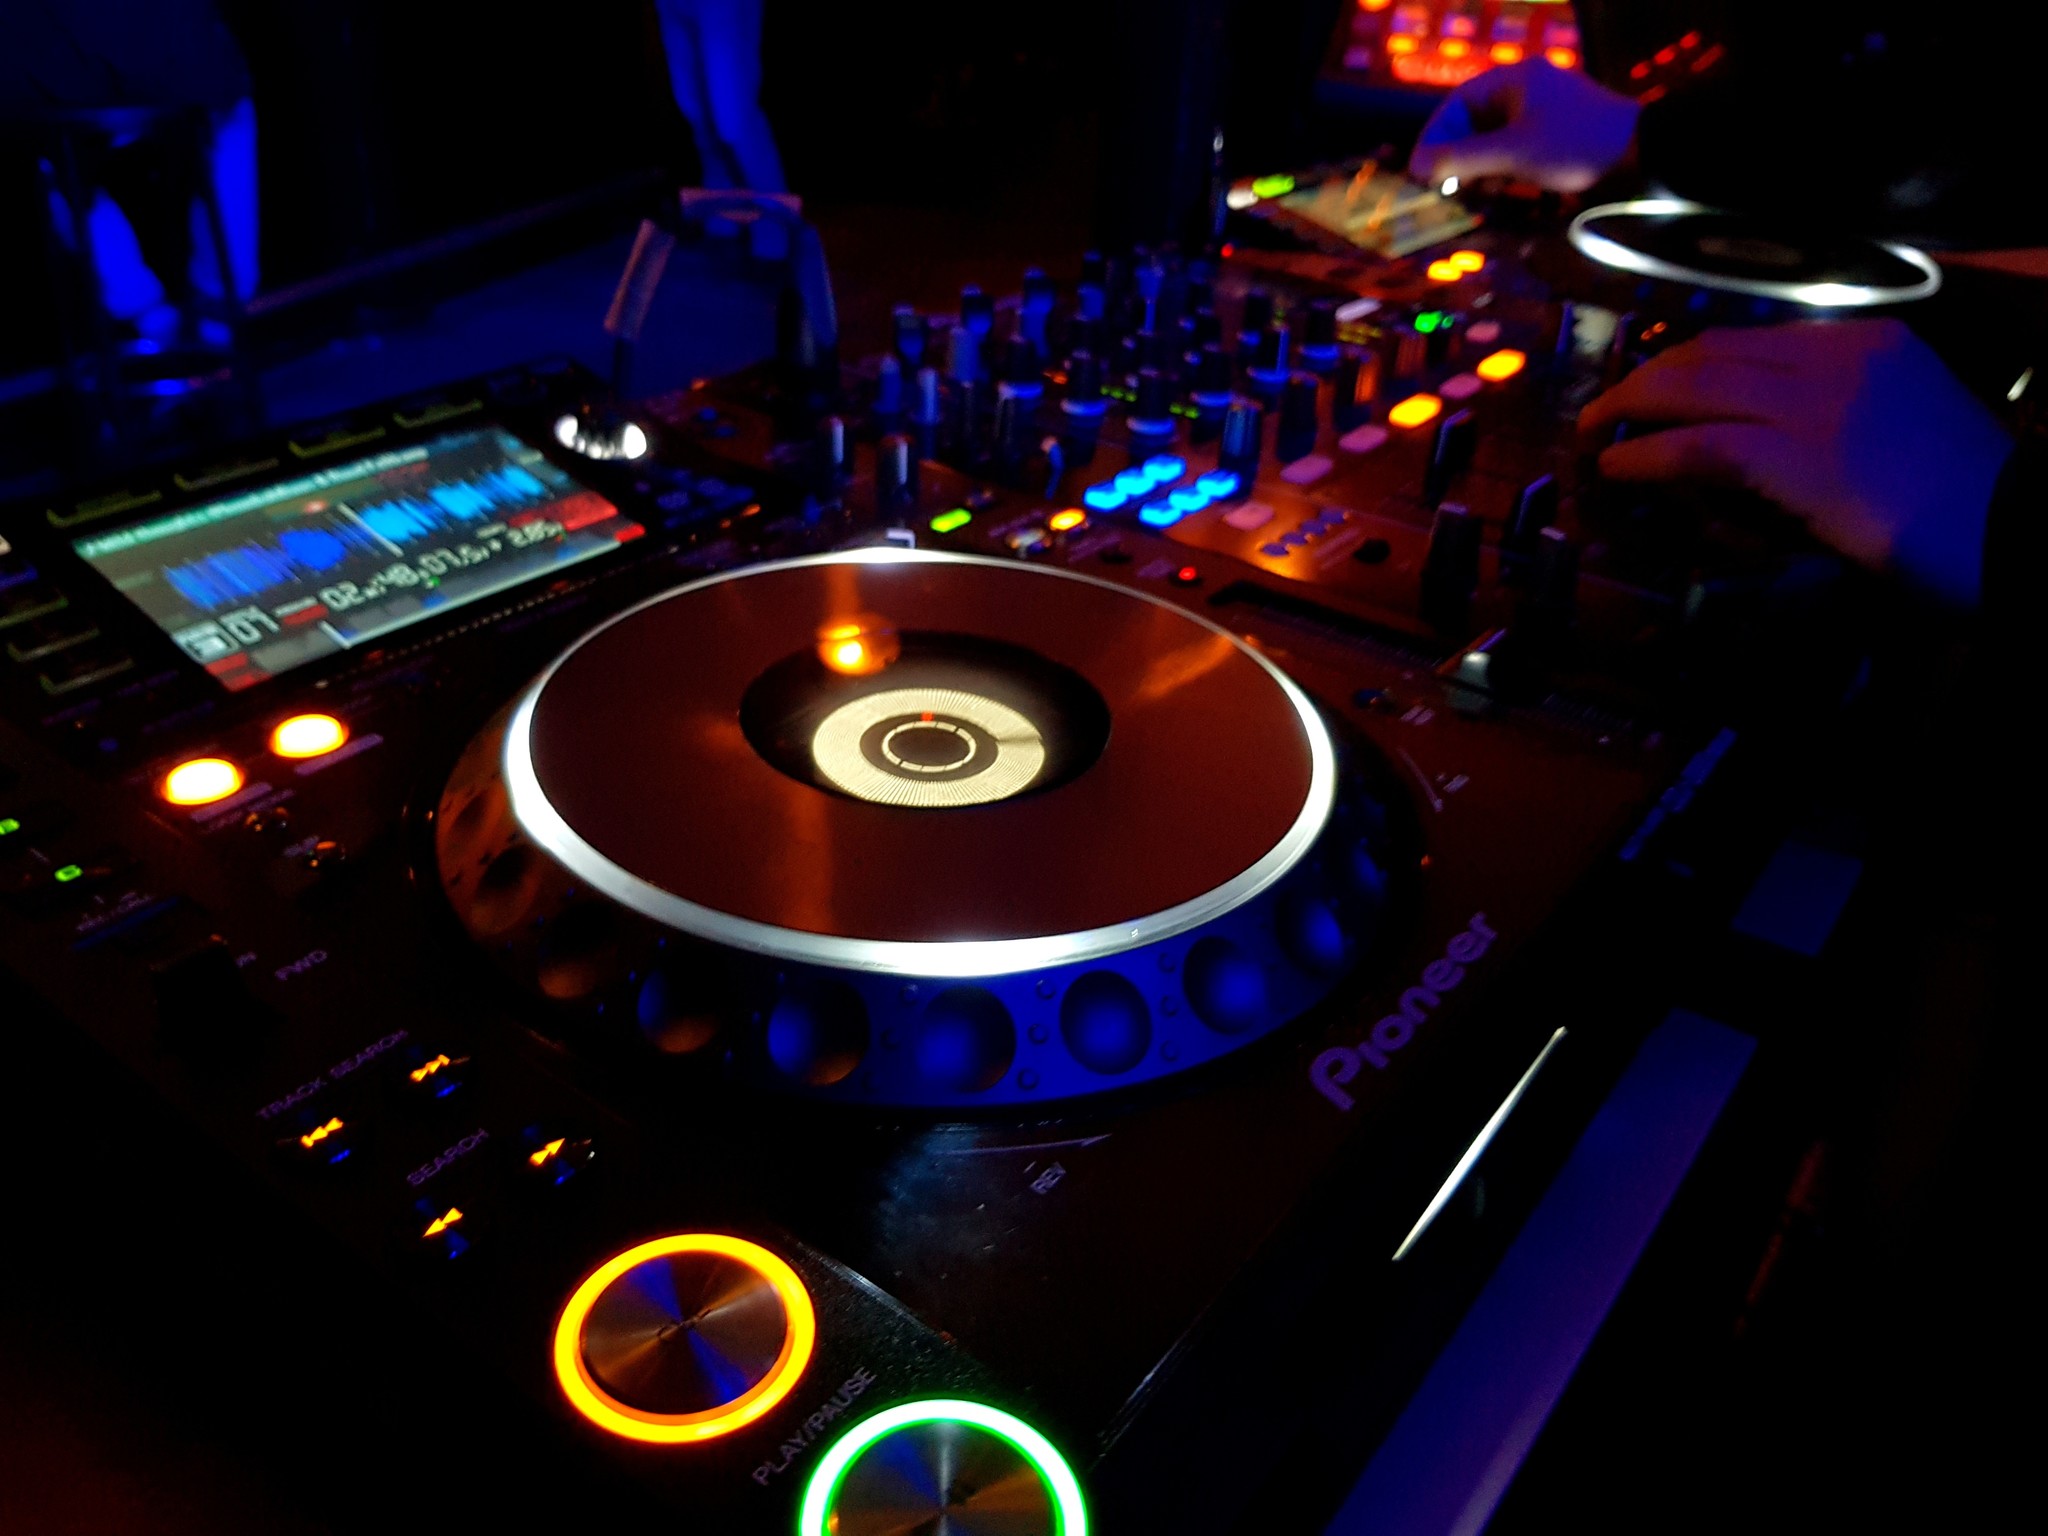 Draaien ‘echte’ DJ’s digitaal of met vinyl? 